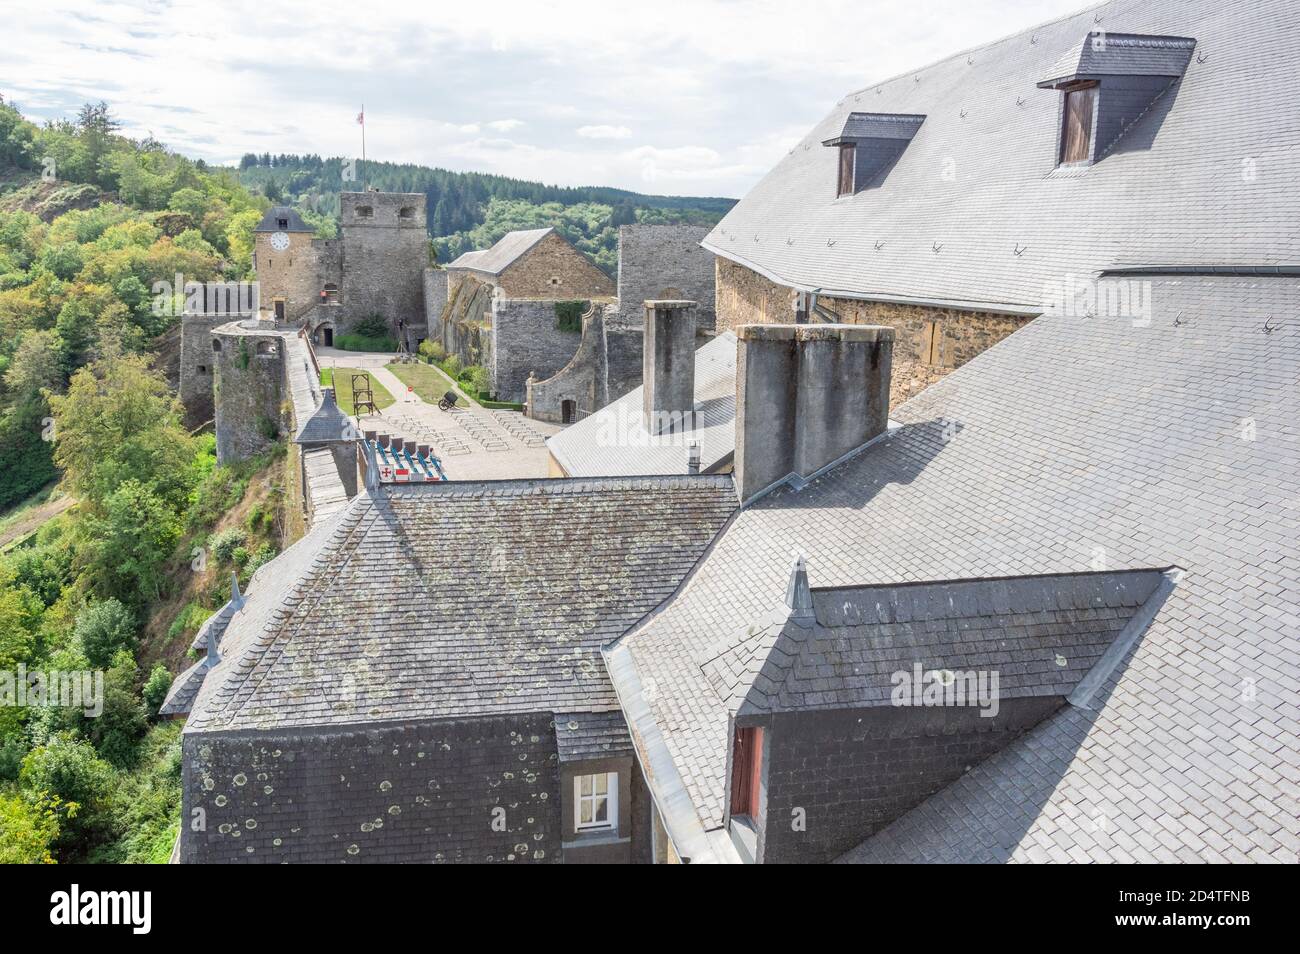 El enorme e histórico castillo fortificado - Château de Bouillon - domina la ciudad de Bouillon en la provincia belga de Luxemburgo a orillas de Semois Foto de stock